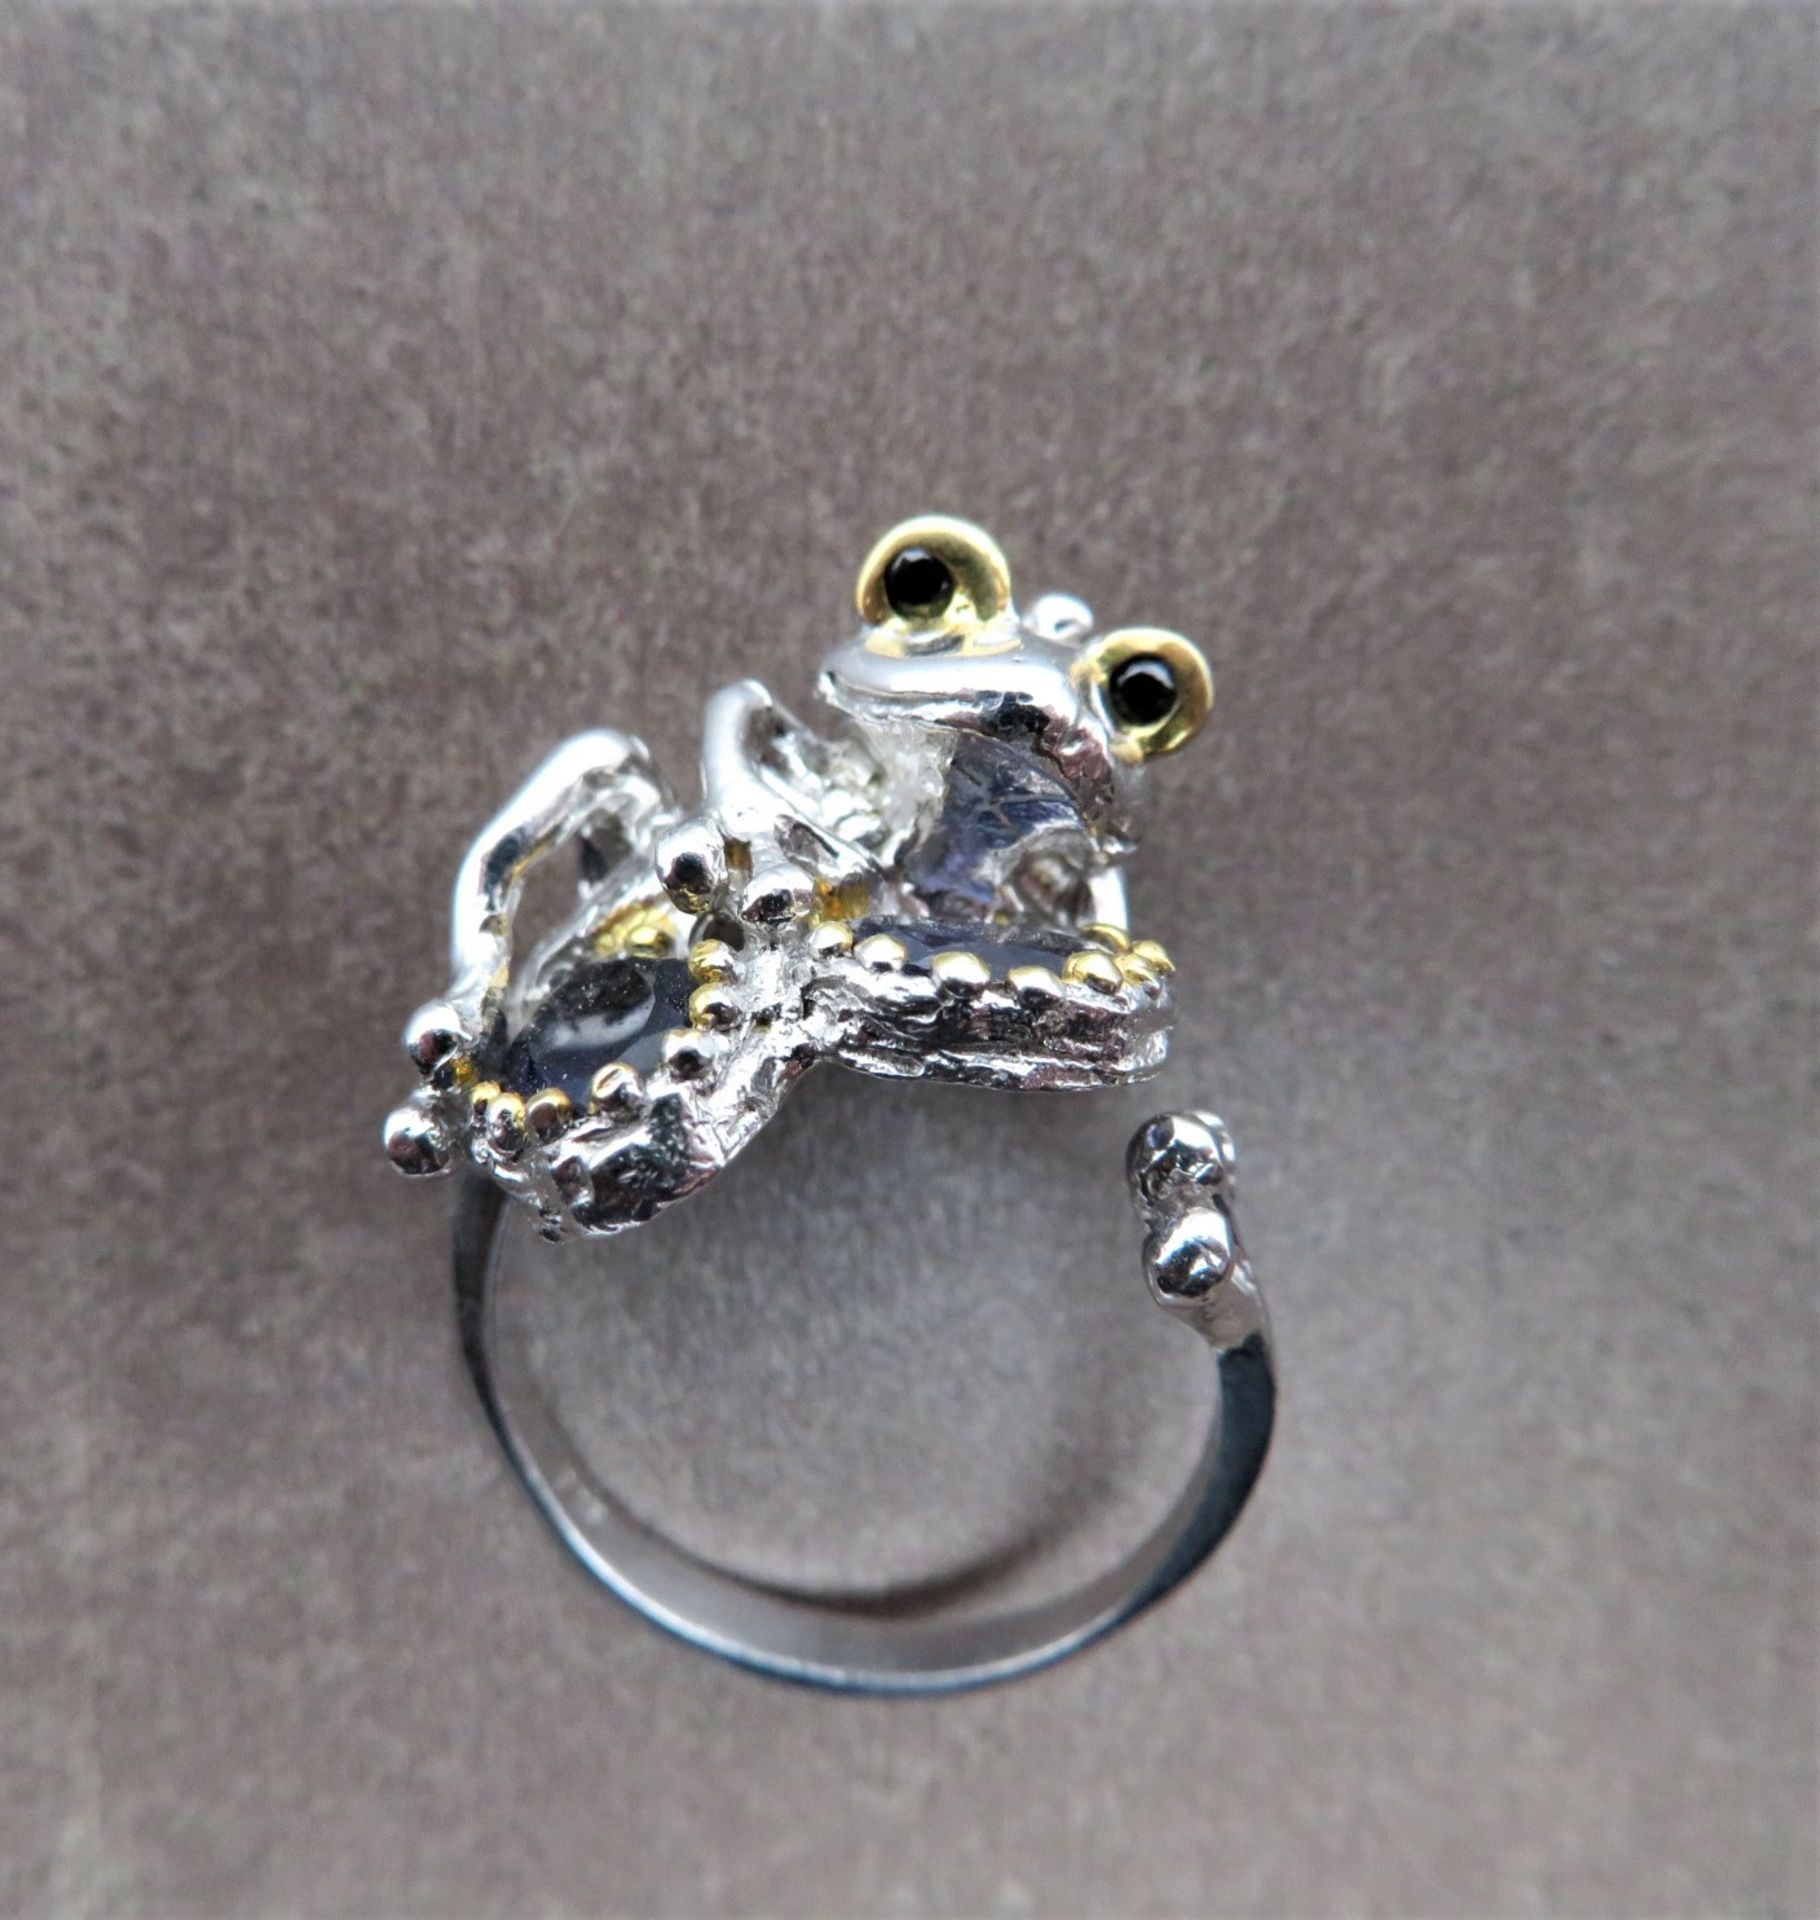 Humoristischer Unikat Ring, liegender Frosch 2 facettierte Saphire umfassend, Silber 925/000, gepun - Image 2 of 2